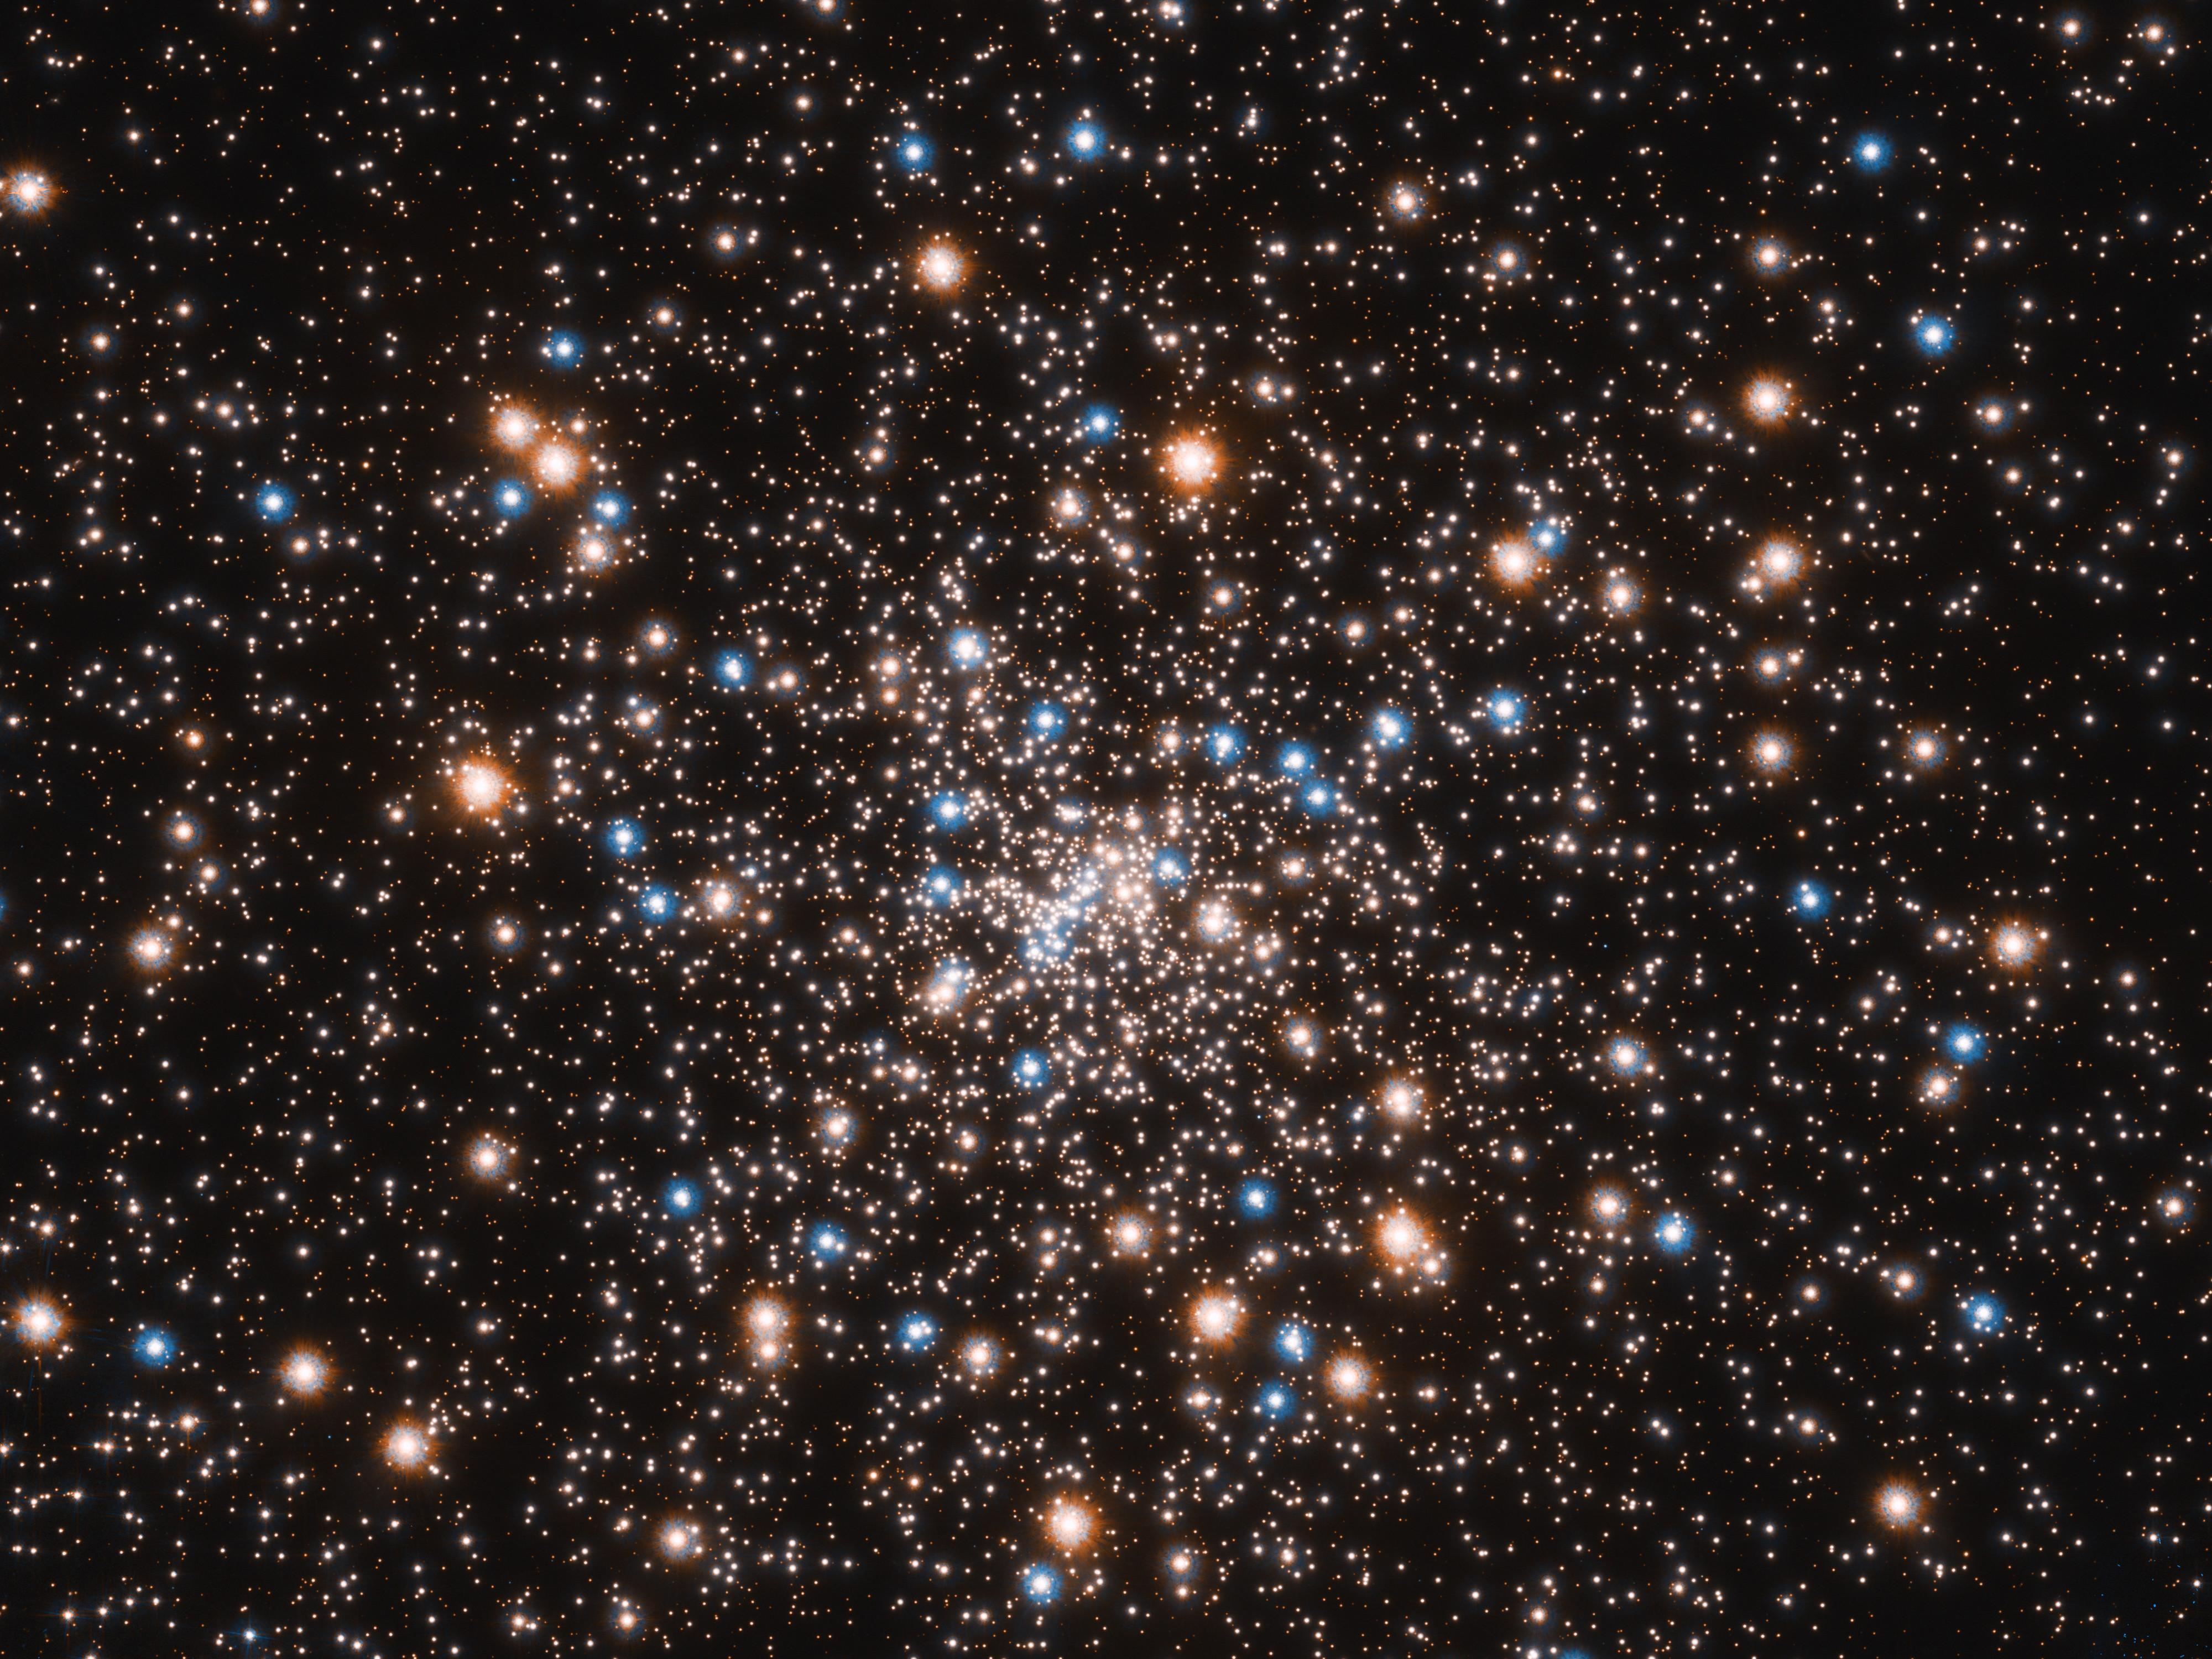 Les centaines de milliers d'étoiles du noyau de l'amas globulaire NGC 6397: les bleues sont en fin de vie, ayant épuisé l'hydrogène qui les fait briller. Elles convertissent leur hélium en énergie dans leur noyau: il fusionne à une température plus élevée apparaissant en bleu. La lueur rougeâtre provient de géantes rouges qui ont consommé leur hydrogène et ont grossi. La myriade de petits objets blancs comprend des étoiles comme notre Soleil. Image Hubble, février 2021. [NASA/ESA - T. Brown, S. Casertano, J. Anderson (STScI)]